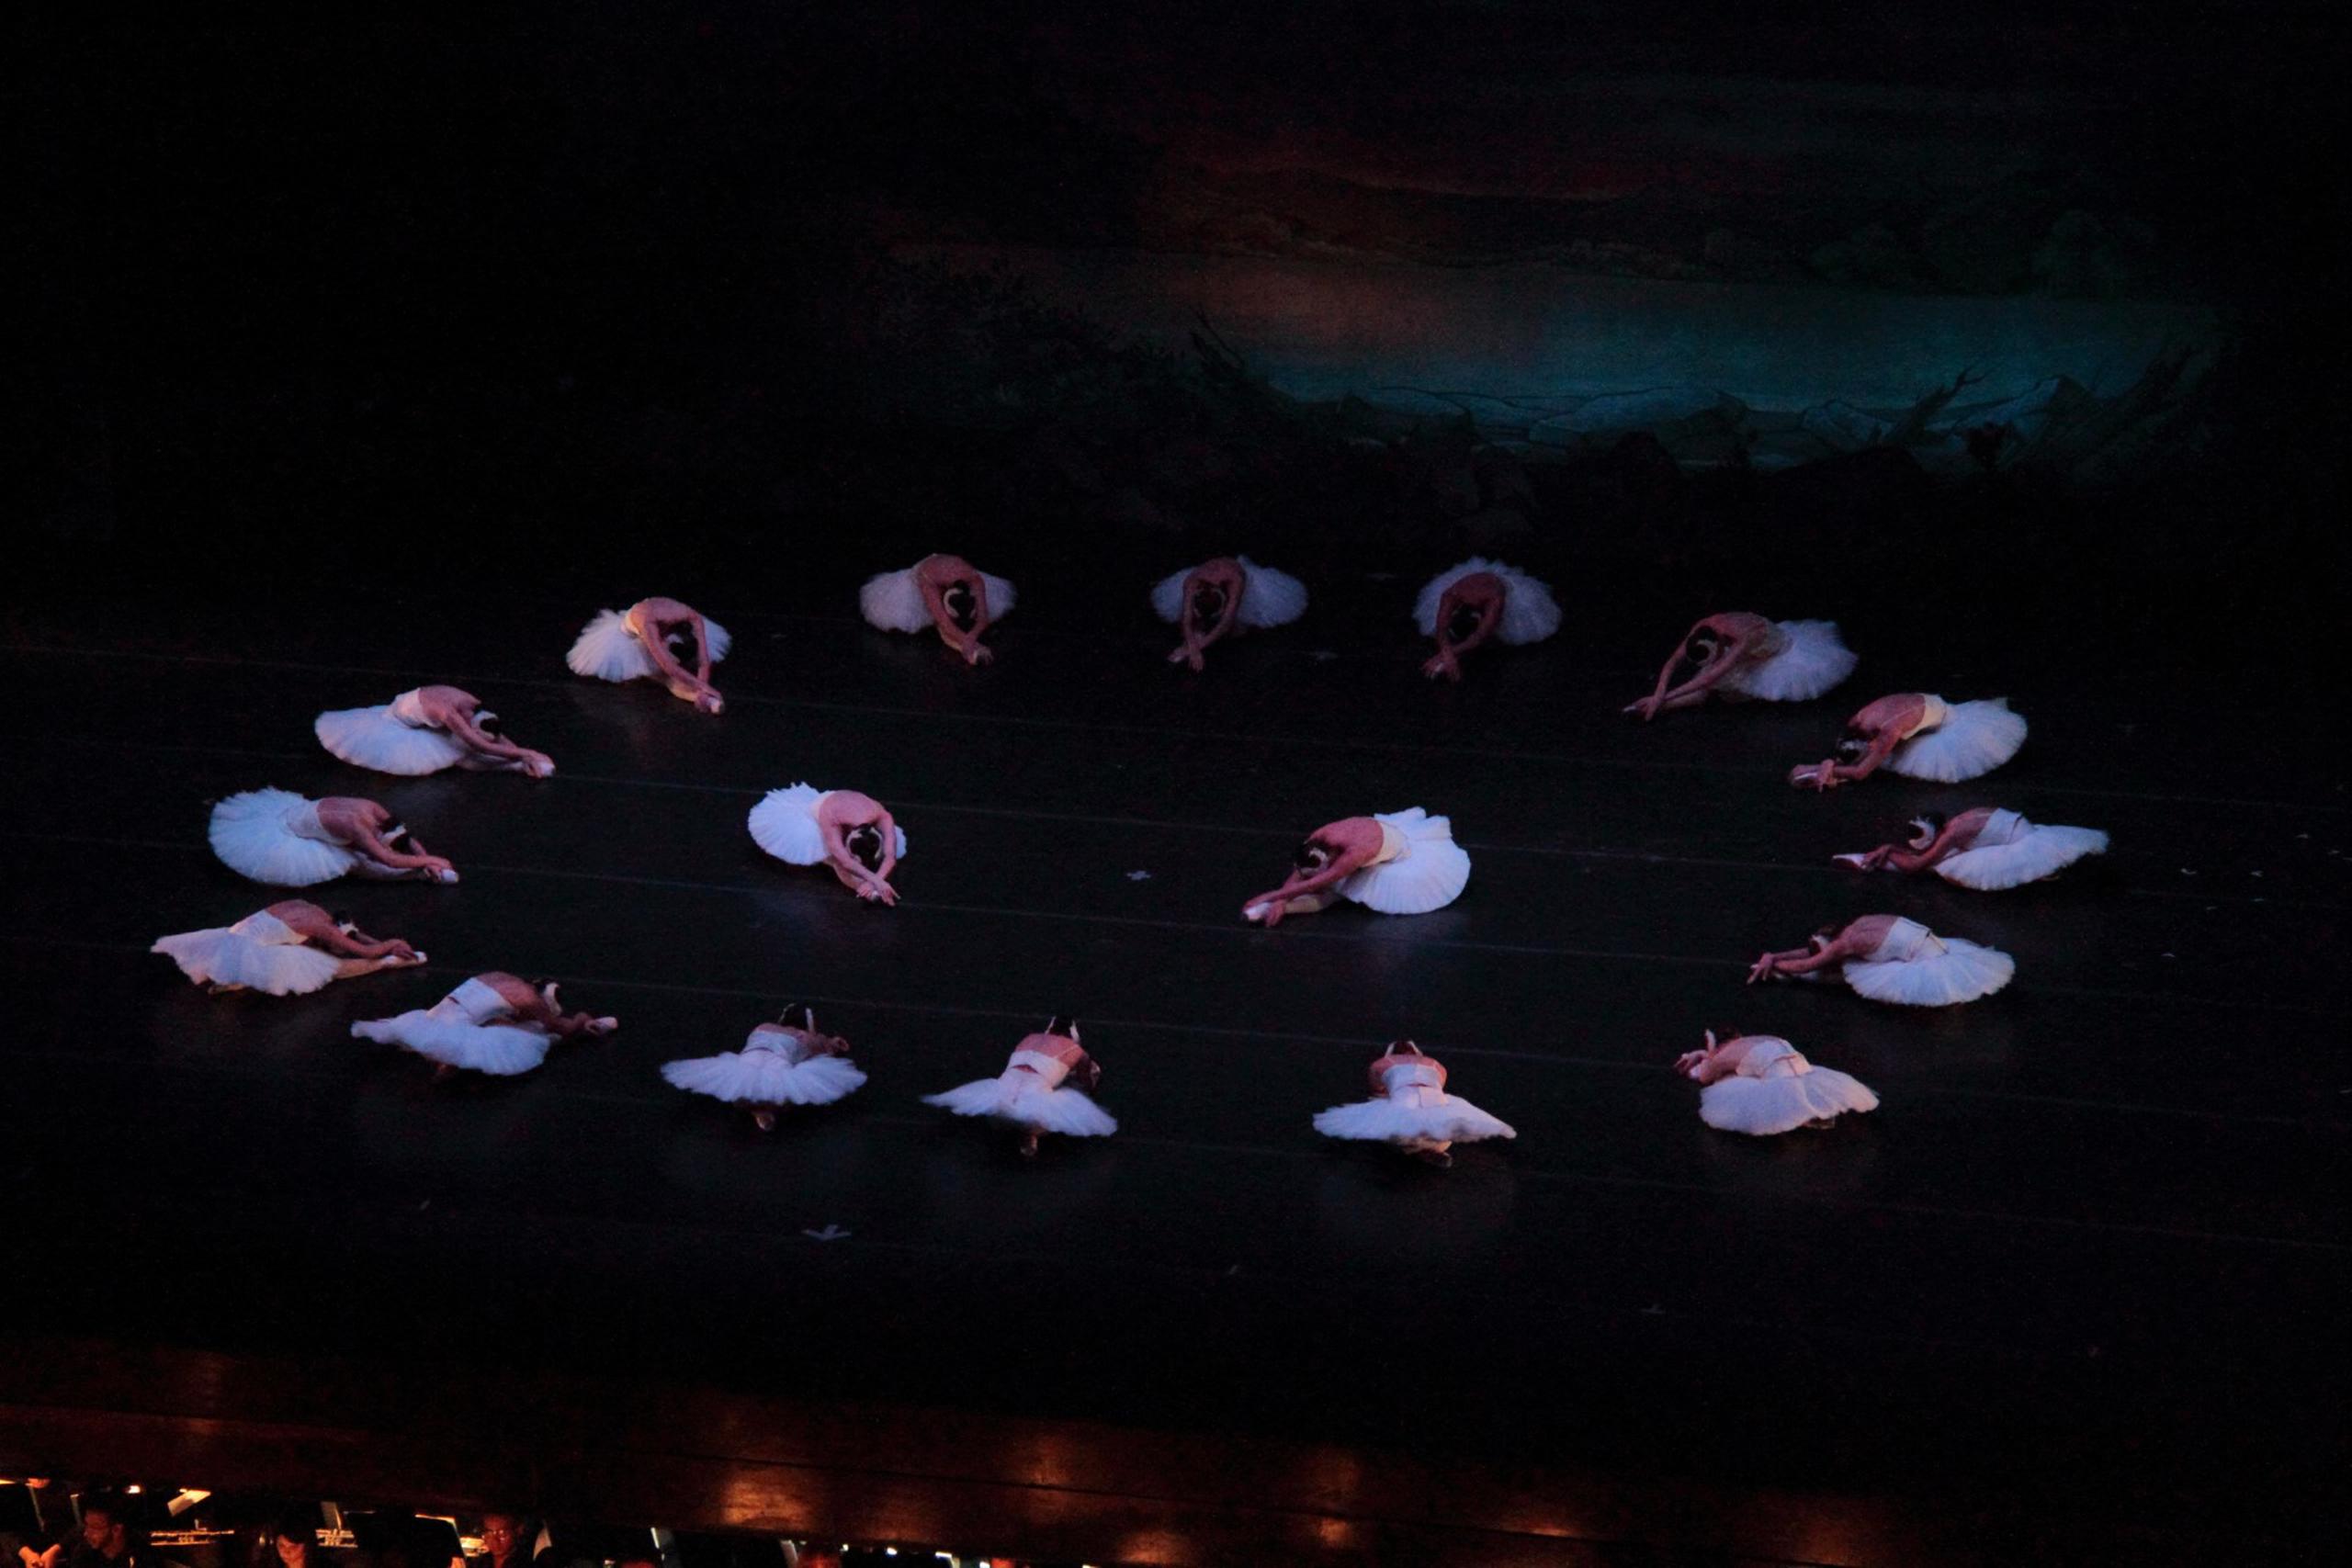 Ballet Concierto presentará "El lago de los cisnes" los días 27 y 28 de abril.